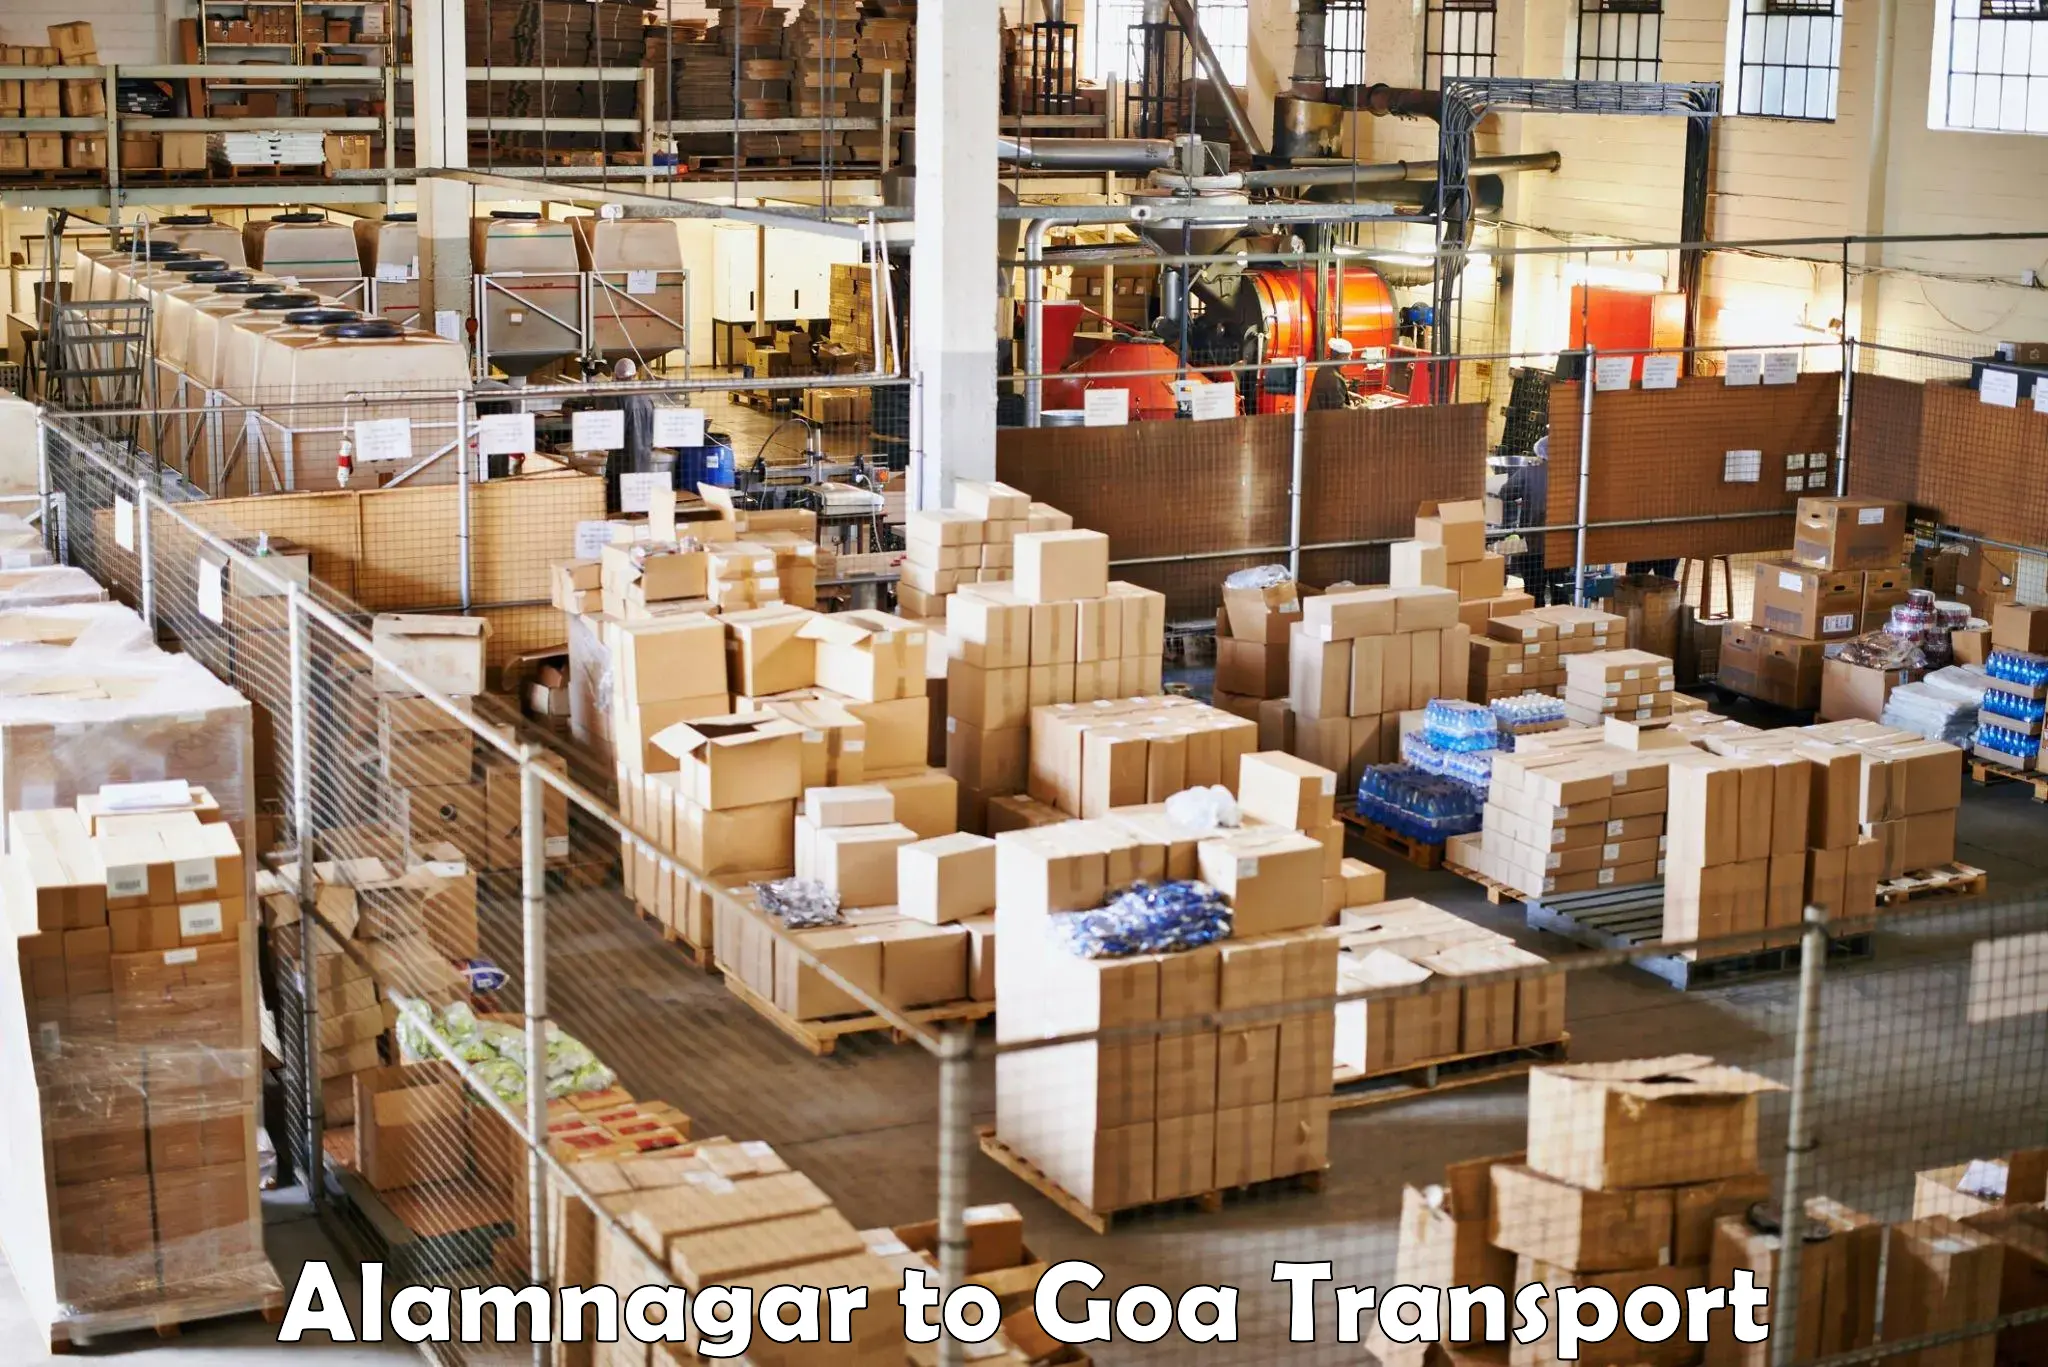 Express transport services Alamnagar to Vasco da Gama